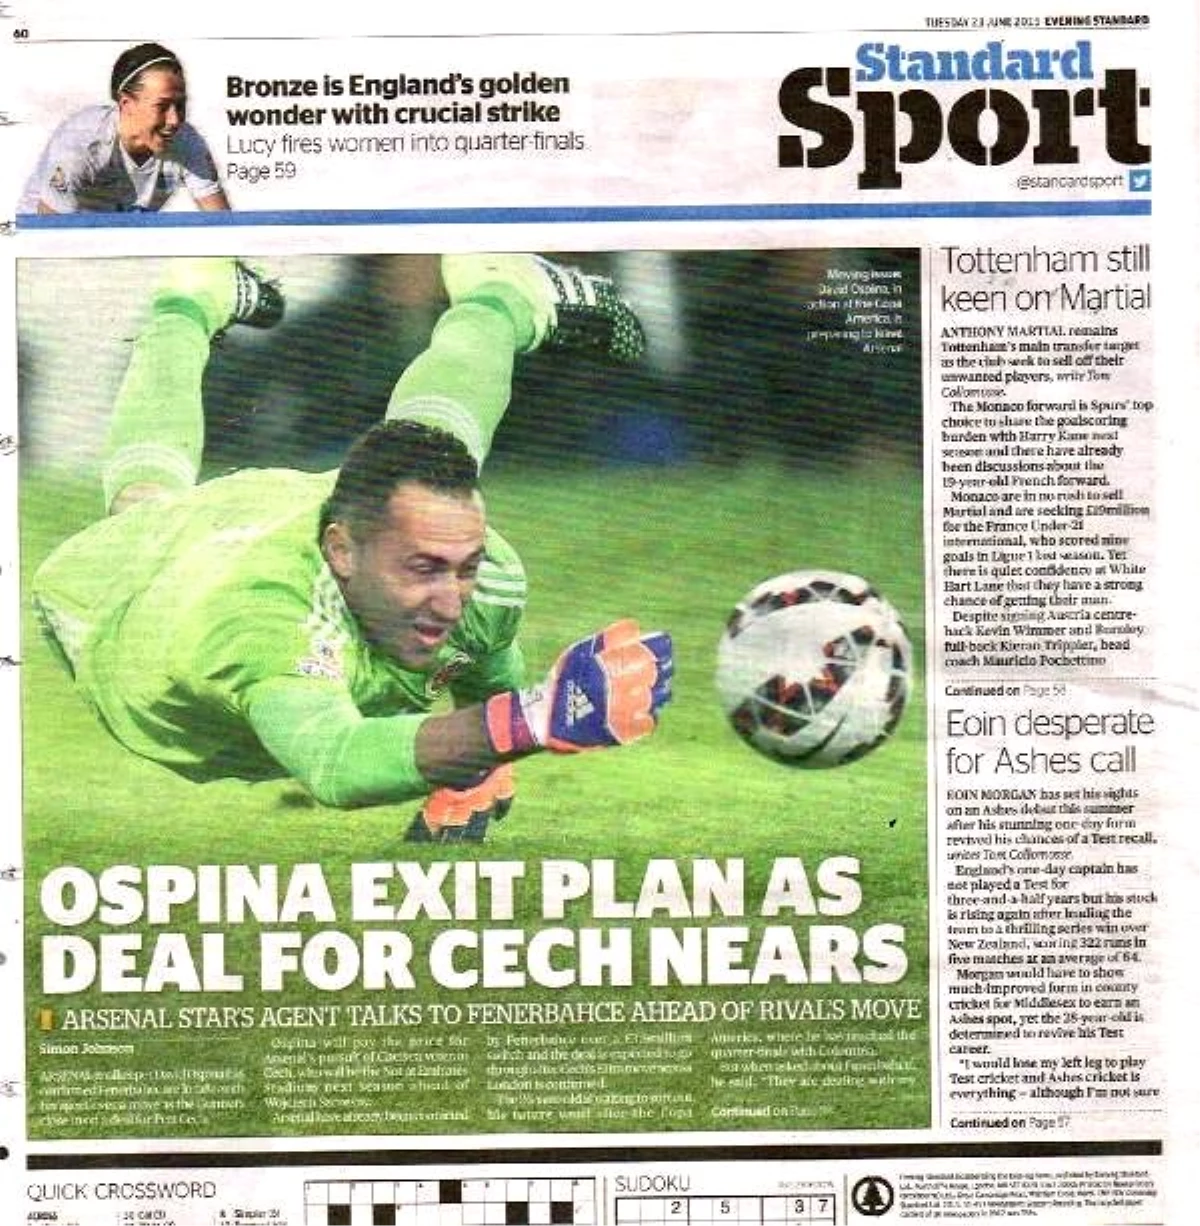 Evening Standard: "Cech\'in Transferi Yaklaşırken Ospina\'nın Çıkış Planı"